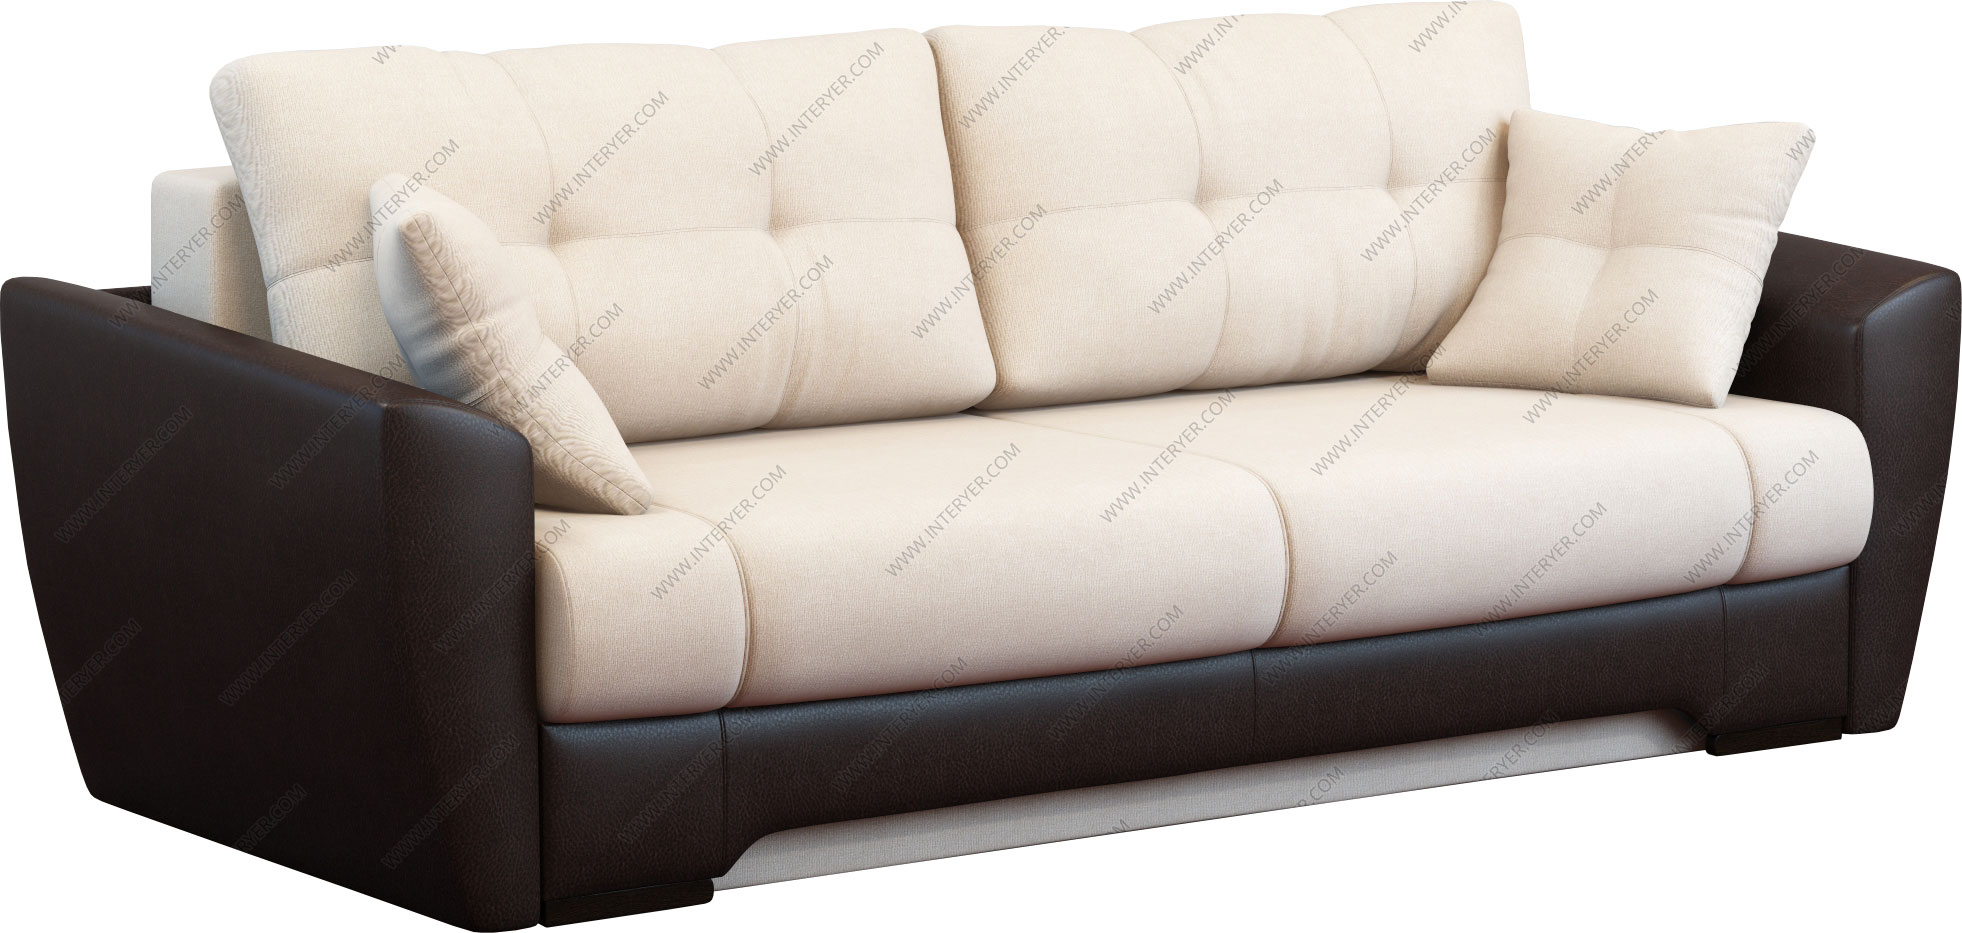 Купить диван Амстердам 3 - диван еврокнижка Амстердам 3 недорого в Москве -цена 29920 руб.